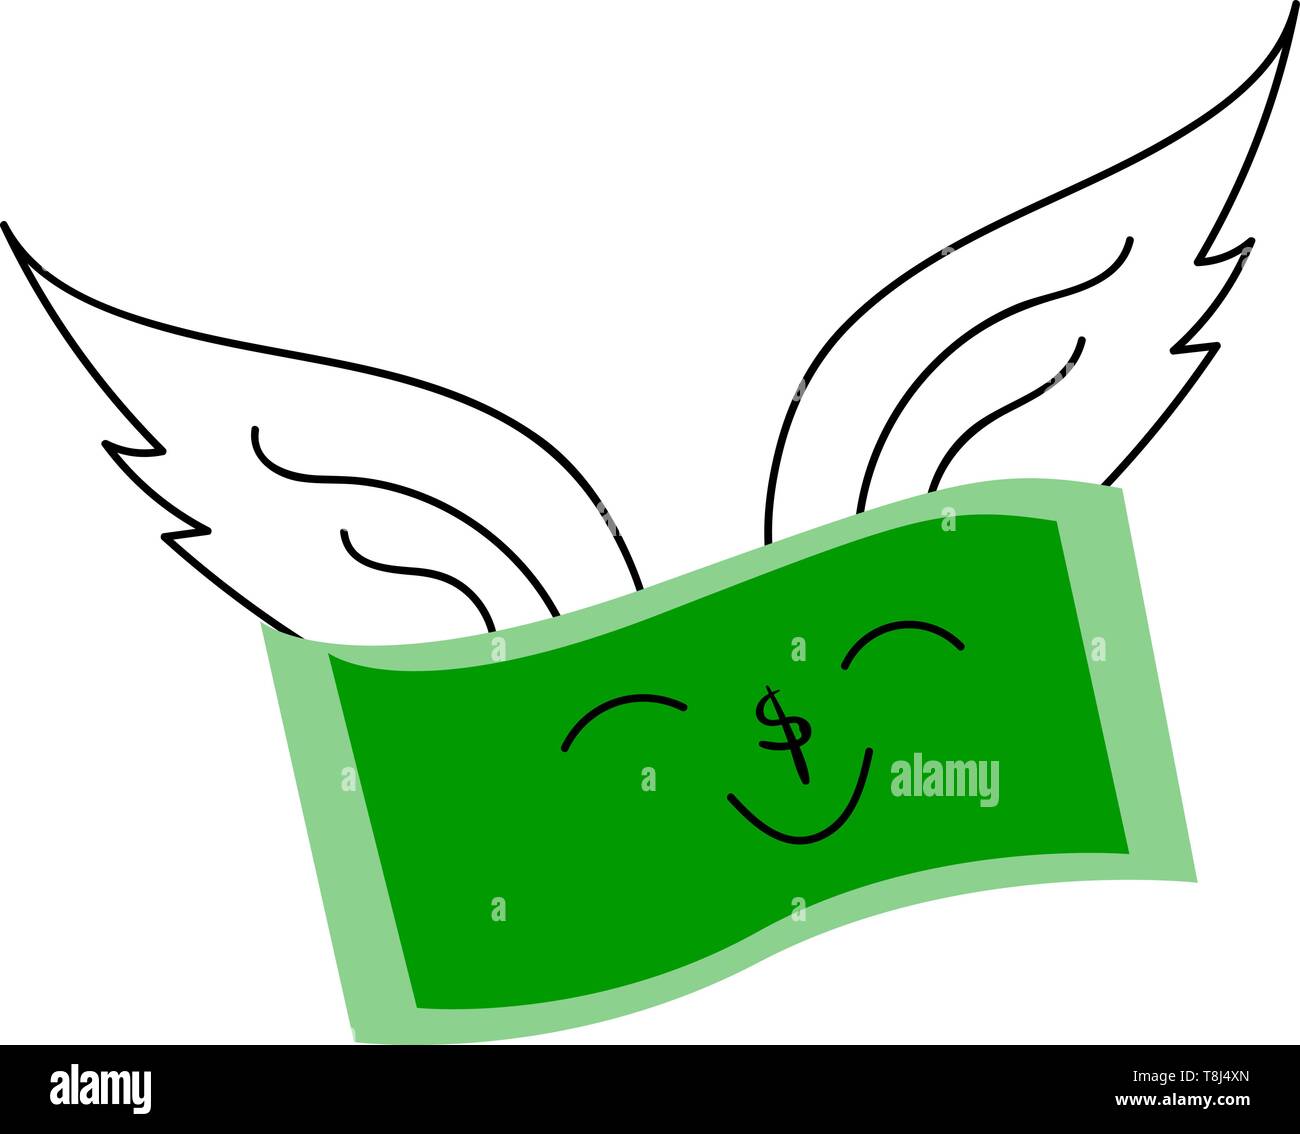 Une monnaie verte qui semble voler avec deux ailes, Scénario, dessin en couleur ou d'illustration. Illustration de Vecteur